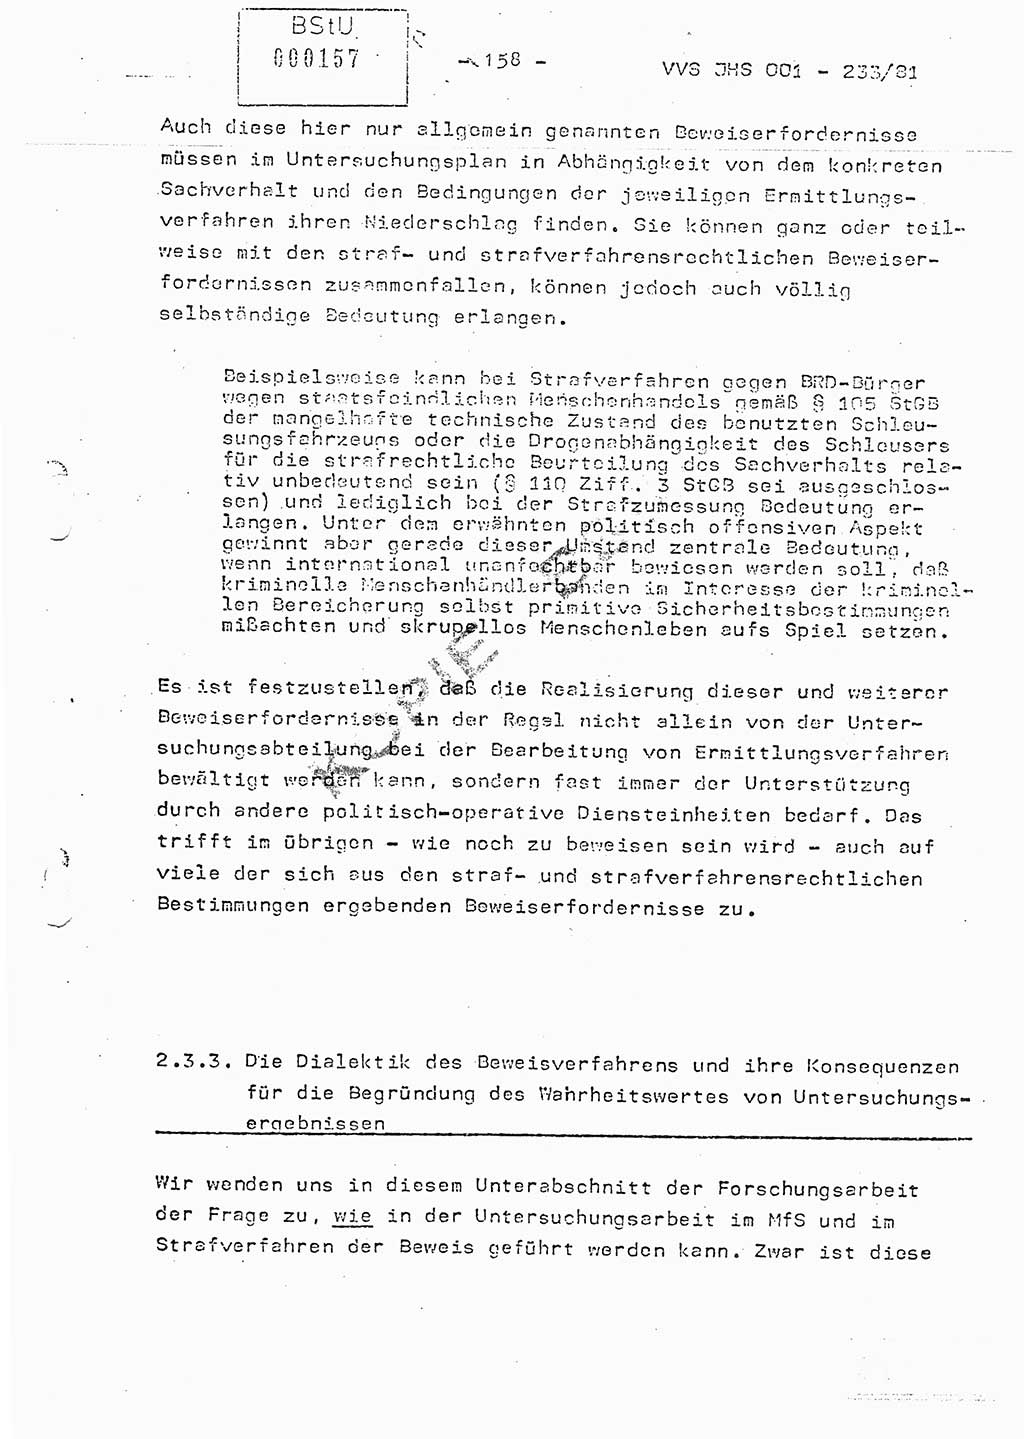 Dissertation Oberstleutnant Horst Zank (JHS), Oberstleutnant Dr. Karl-Heinz Knoblauch (JHS), Oberstleutnant Gustav-Adolf Kowalewski (HA Ⅸ), Oberstleutnant Wolfgang Plötner (HA Ⅸ), Ministerium für Staatssicherheit (MfS) [Deutsche Demokratische Republik (DDR)], Juristische Hochschule (JHS), Vertrauliche Verschlußsache (VVS) o001-233/81, Potsdam 1981, Blatt 158 (Diss. MfS DDR JHS VVS o001-233/81 1981, Bl. 158)